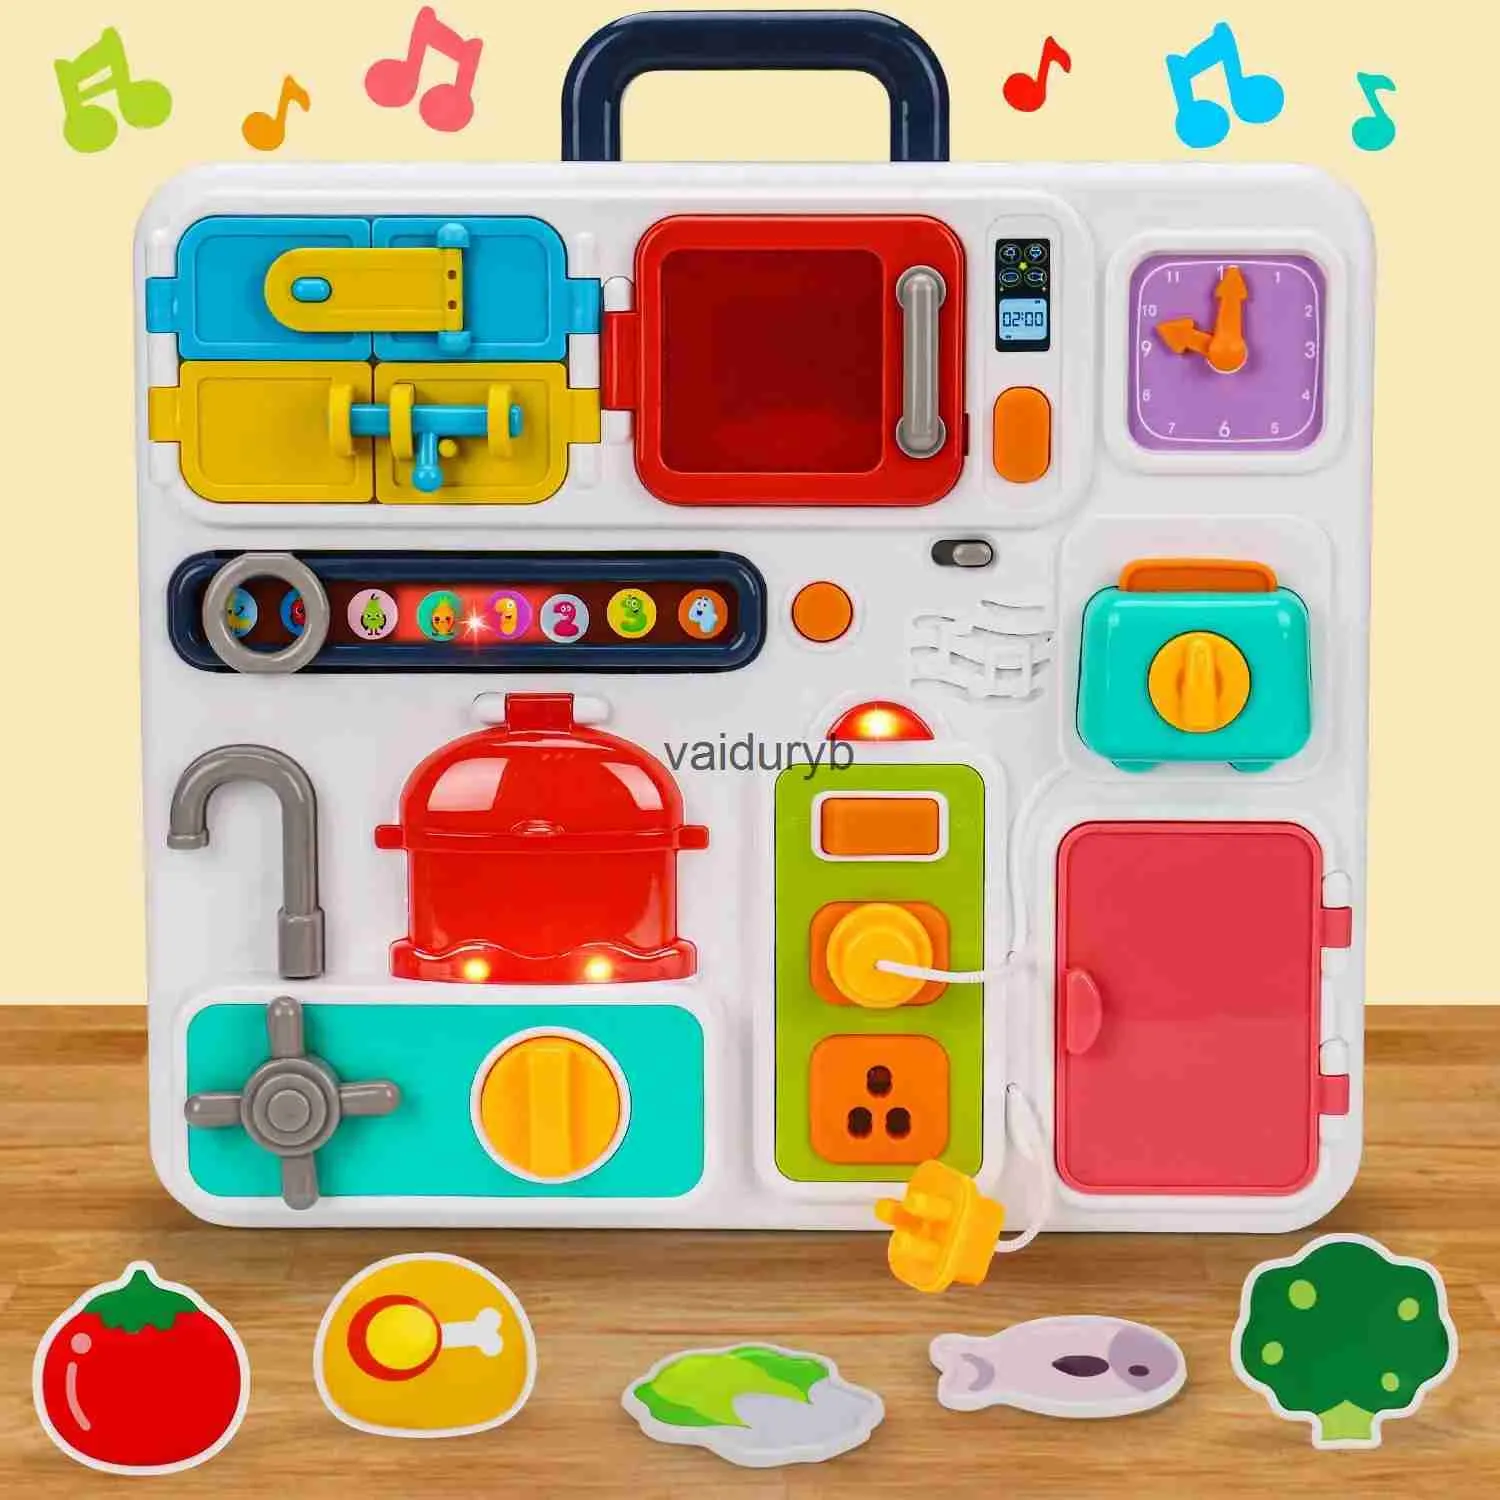 Giocattoli di intelligenza Cucina Montessori Tavola occupata per i più piccoli 1-3 Giocattoli da viaggio Illuminano il bambino musicale 12-18 mesi Capacità motorie finivaiduryb